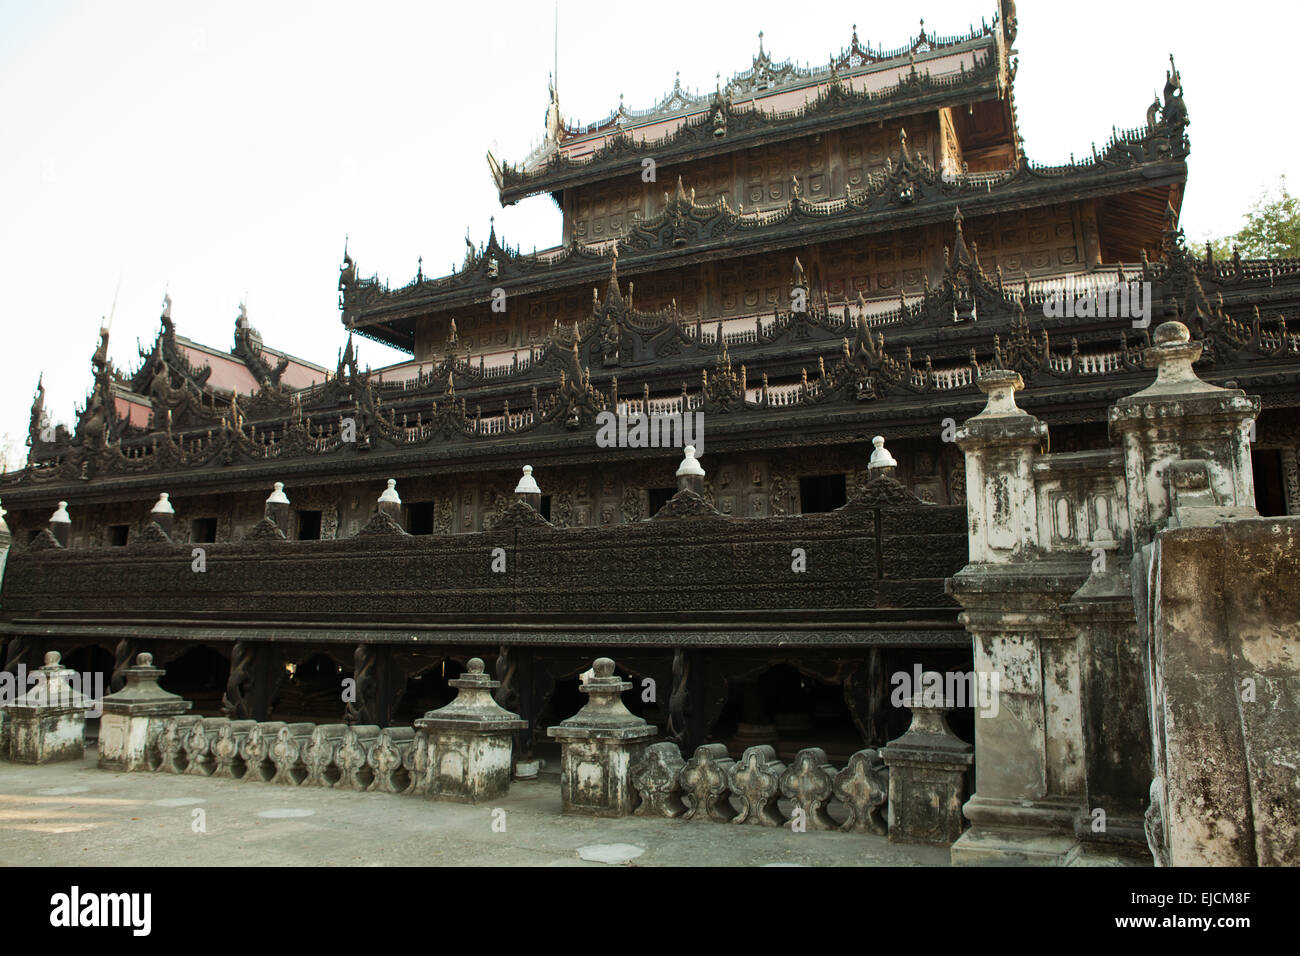 Monastère Shwenandaw Kyang, parfois appelé le 'Teak Temple' ou 'Golden Palace' Banque D'Images